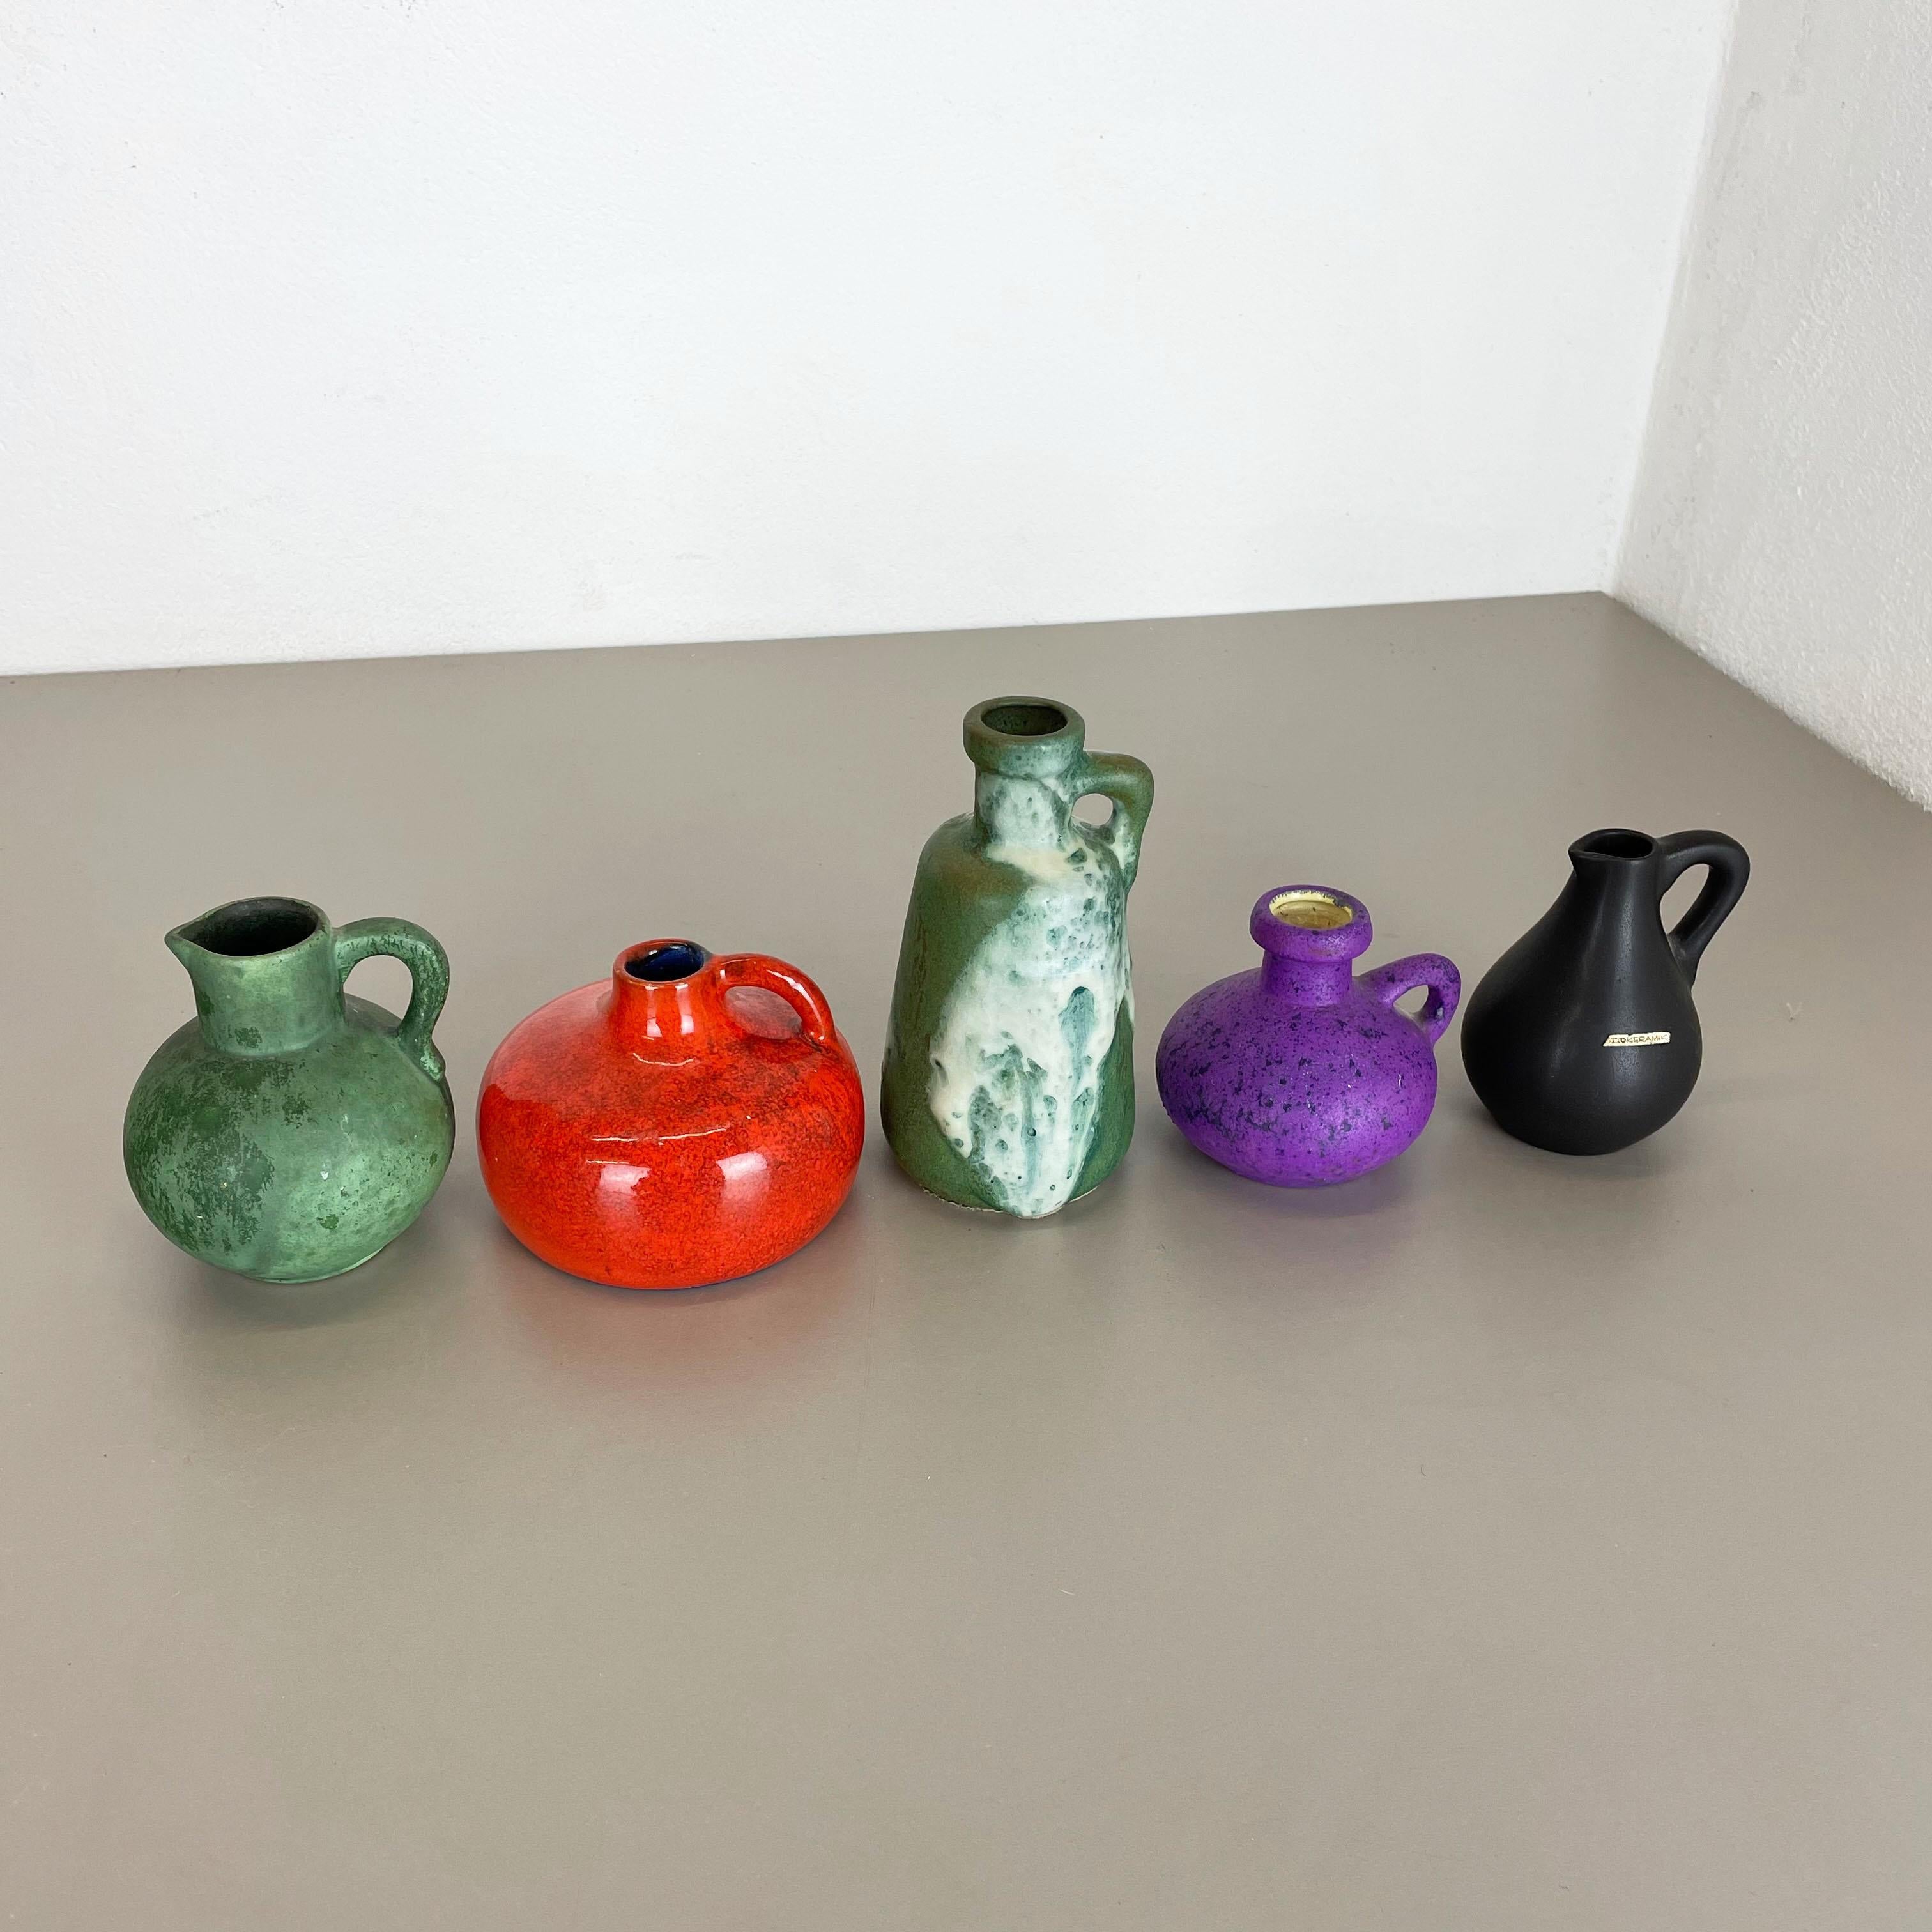 Artikel:

Keramik-Objekte Satz von 5


Designer und Produzent:

Otto Keramik, Deutschland



Jahrzehnt:

1970s


Diese originalen Vintage Studio Pottery Objekte wurden von Otto Keramik in den 1970er Jahren in Deutschland entworfen